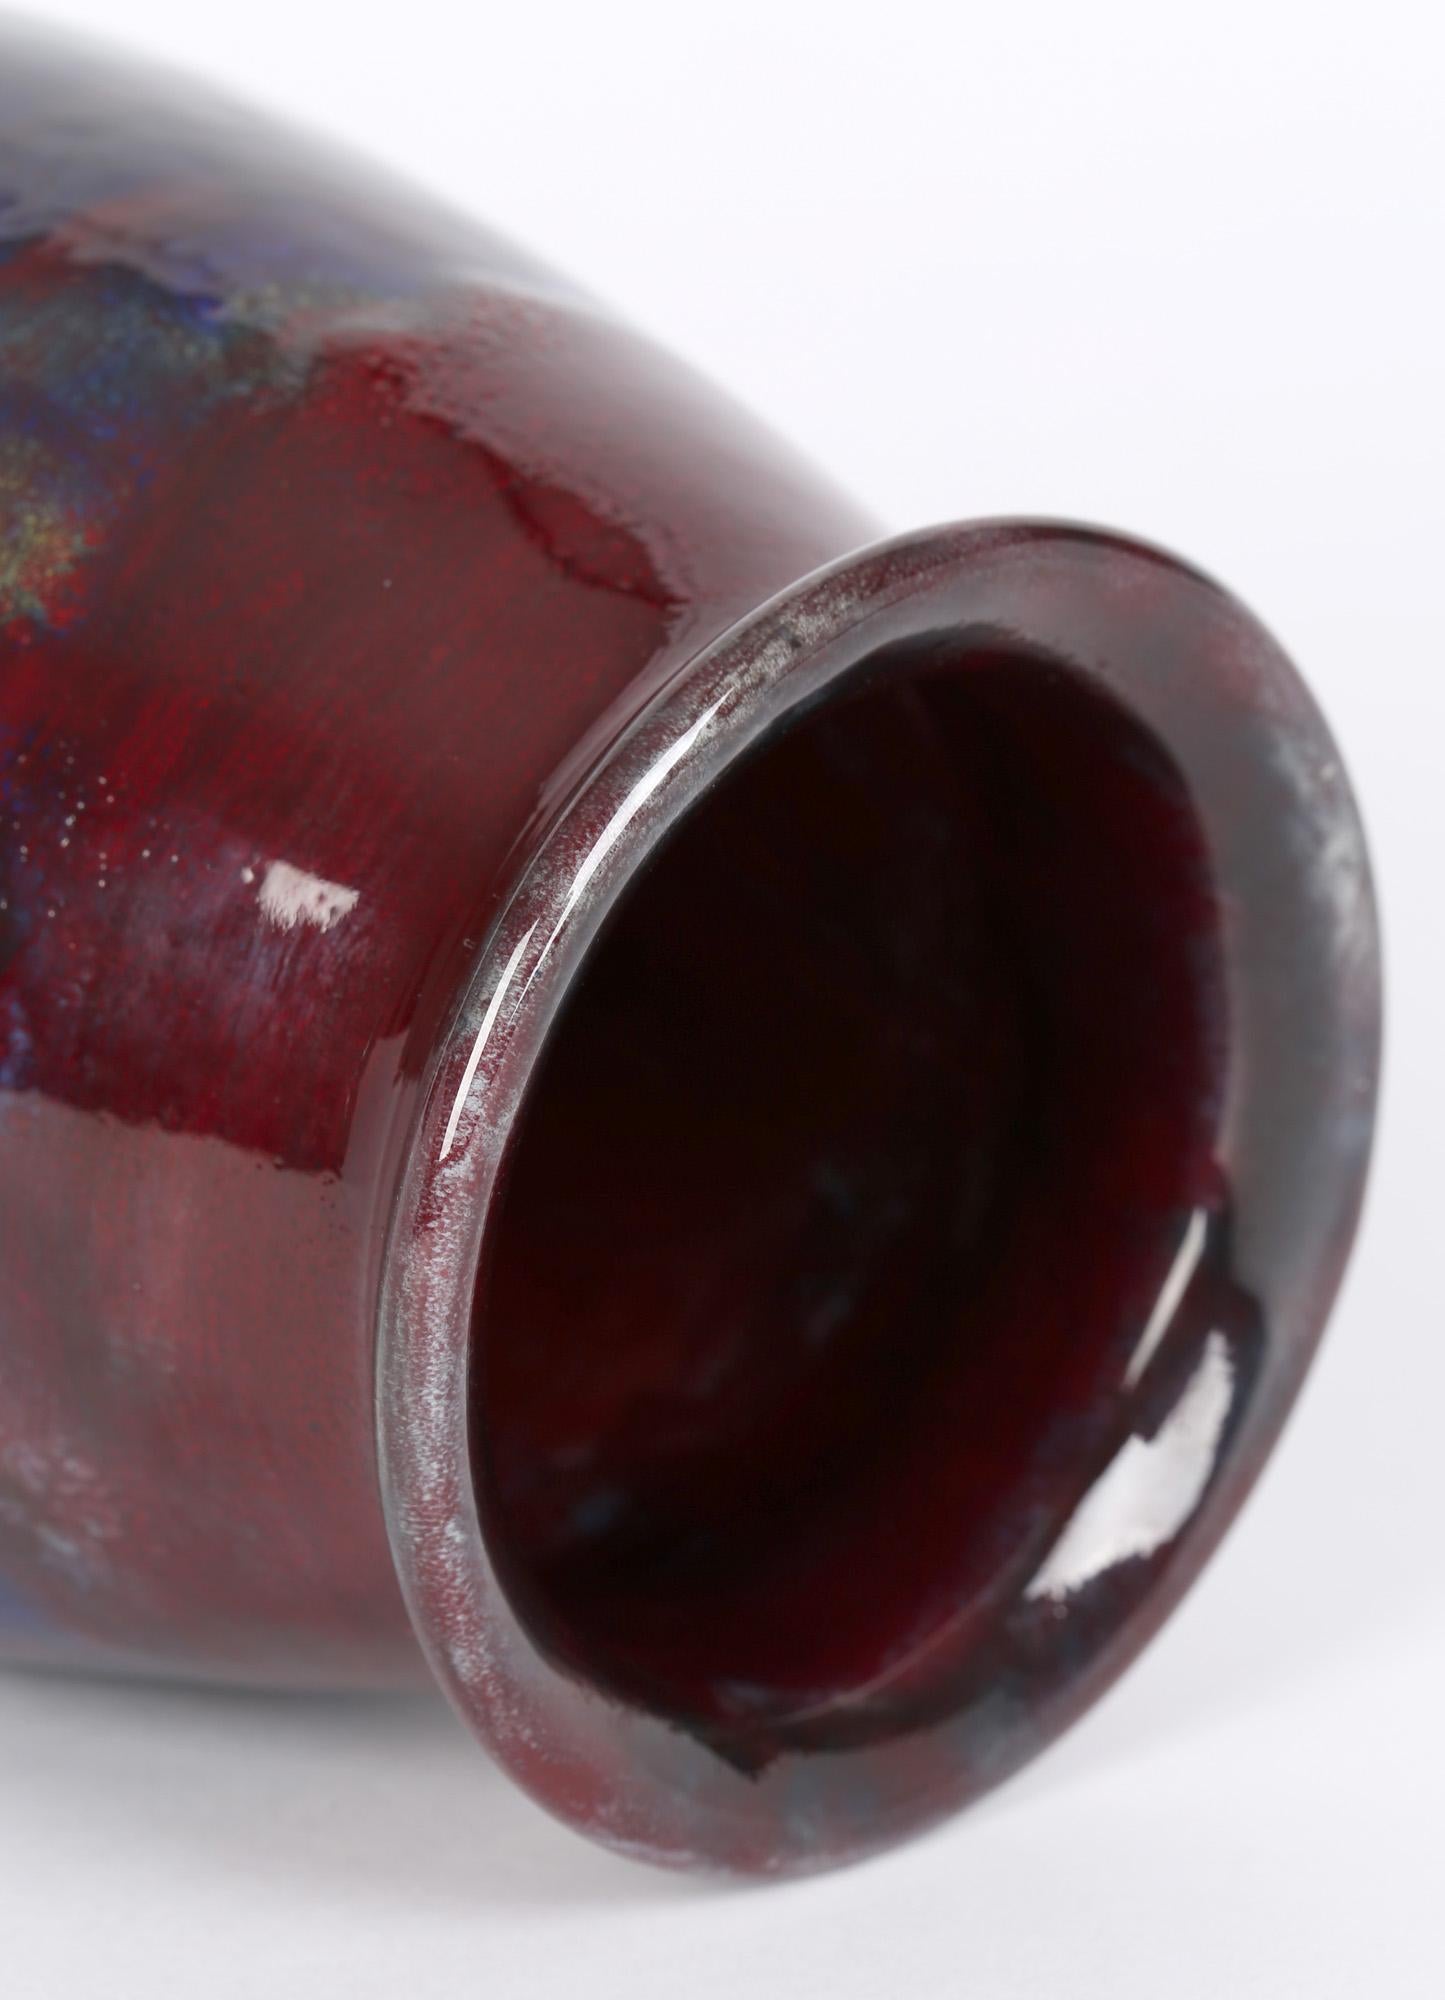 Bernard Moore (Brite, 1850-1935) Jugendstilvase aus Keramik mit Flammglasur aus der Zeit um 1905. Die Vase mit runder, bauchiger Form ist leicht getöpfert und von Hand mit blauen und gelben Streifenglasuren sowie roten Flammglasuren verziert. Die